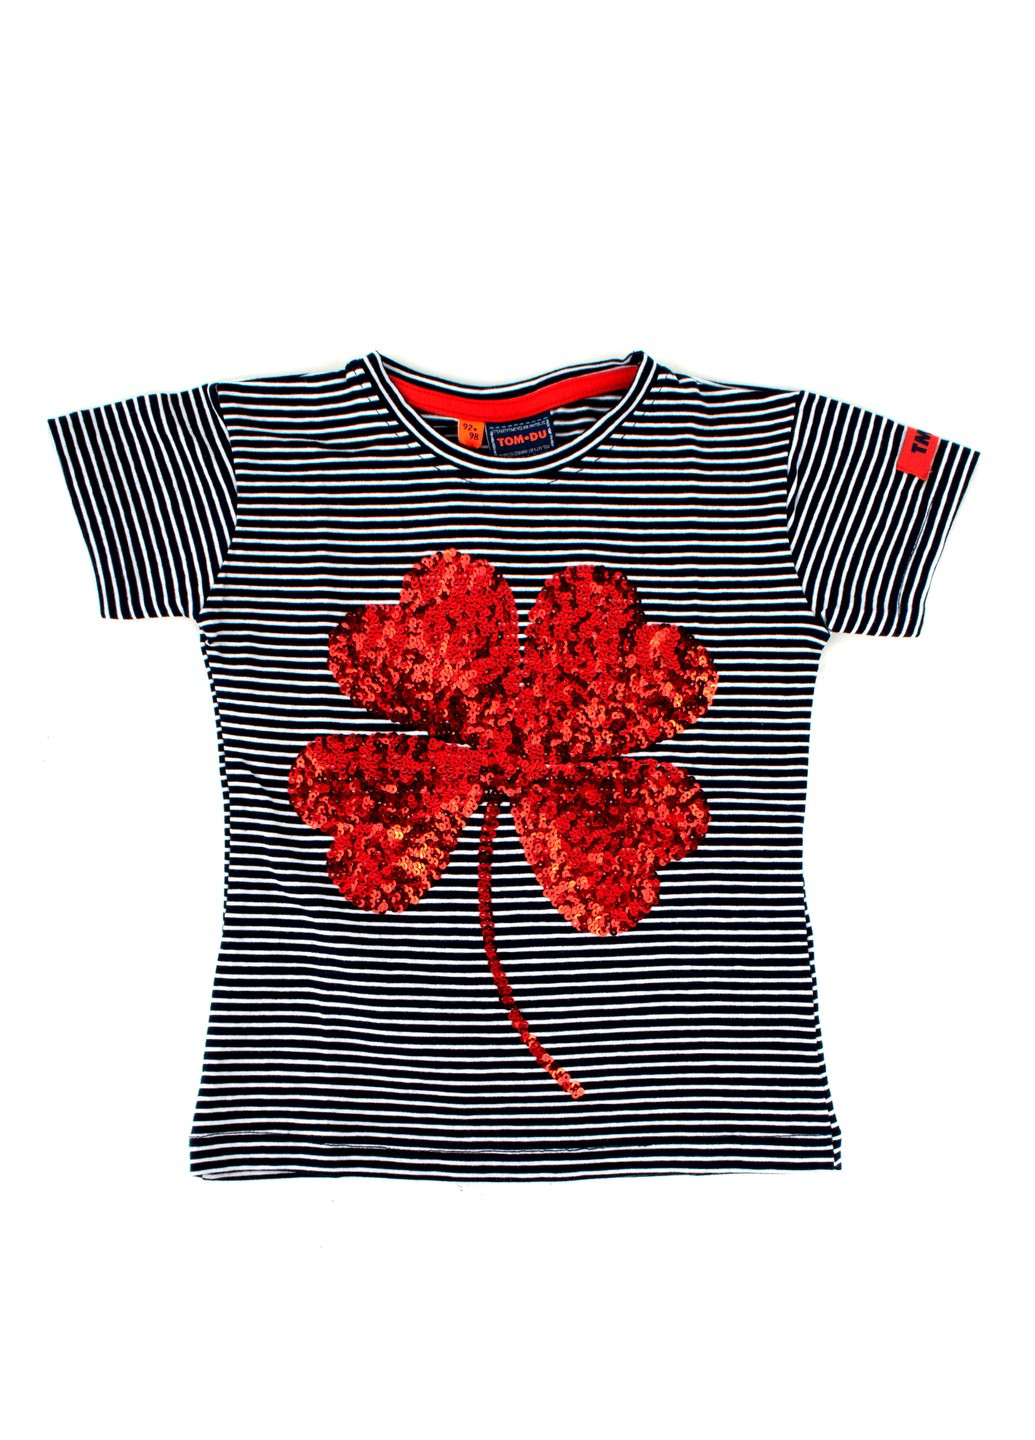 Красная футболка на девочку полосатая tom-du с пайетками TOM DU